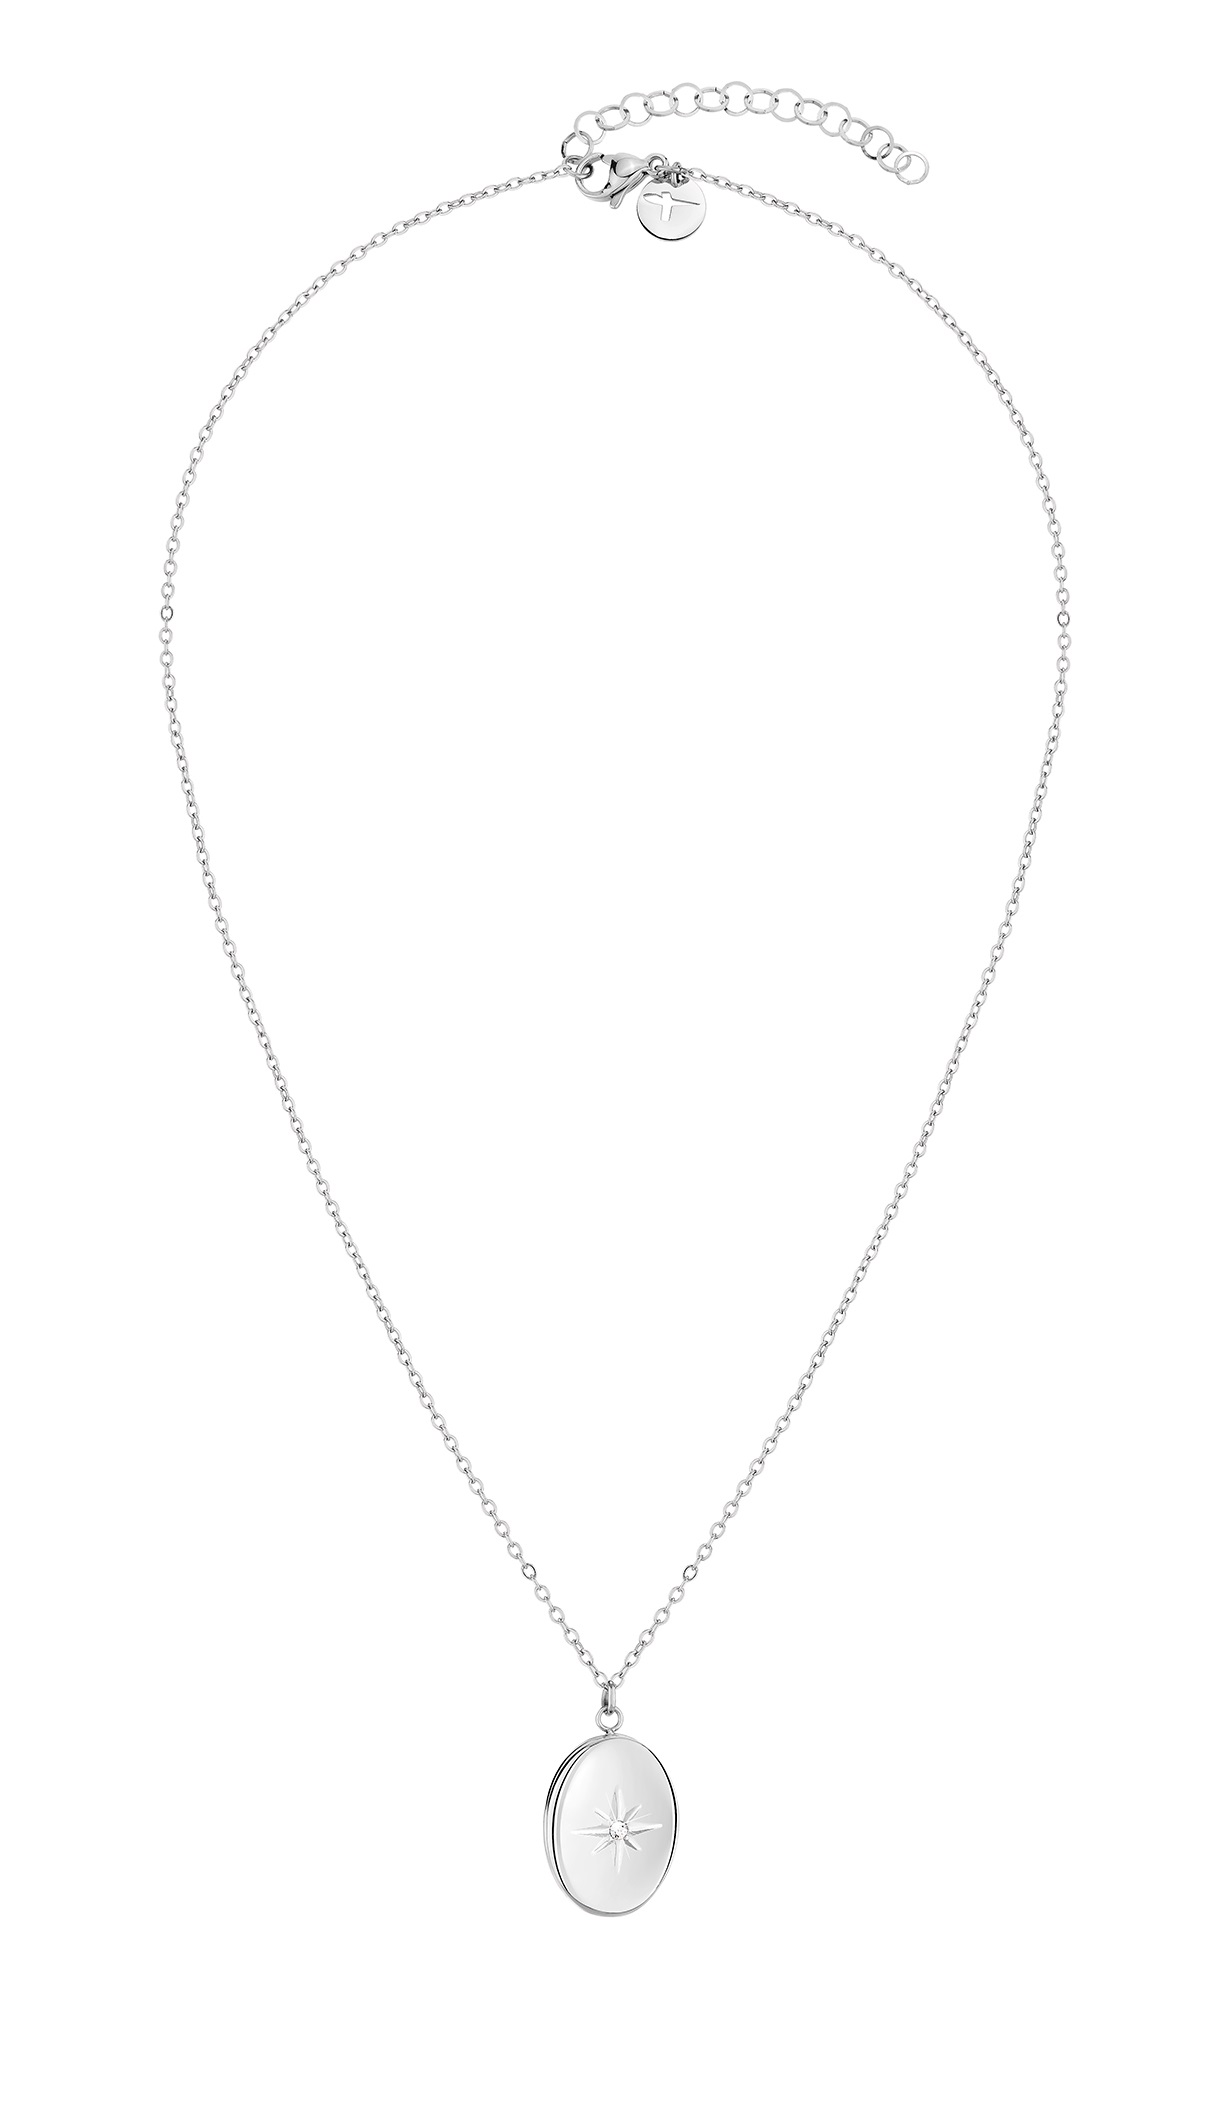 Tamaris Elegantní ocelový náhrdelník s medailonem TJ-0095-N-50